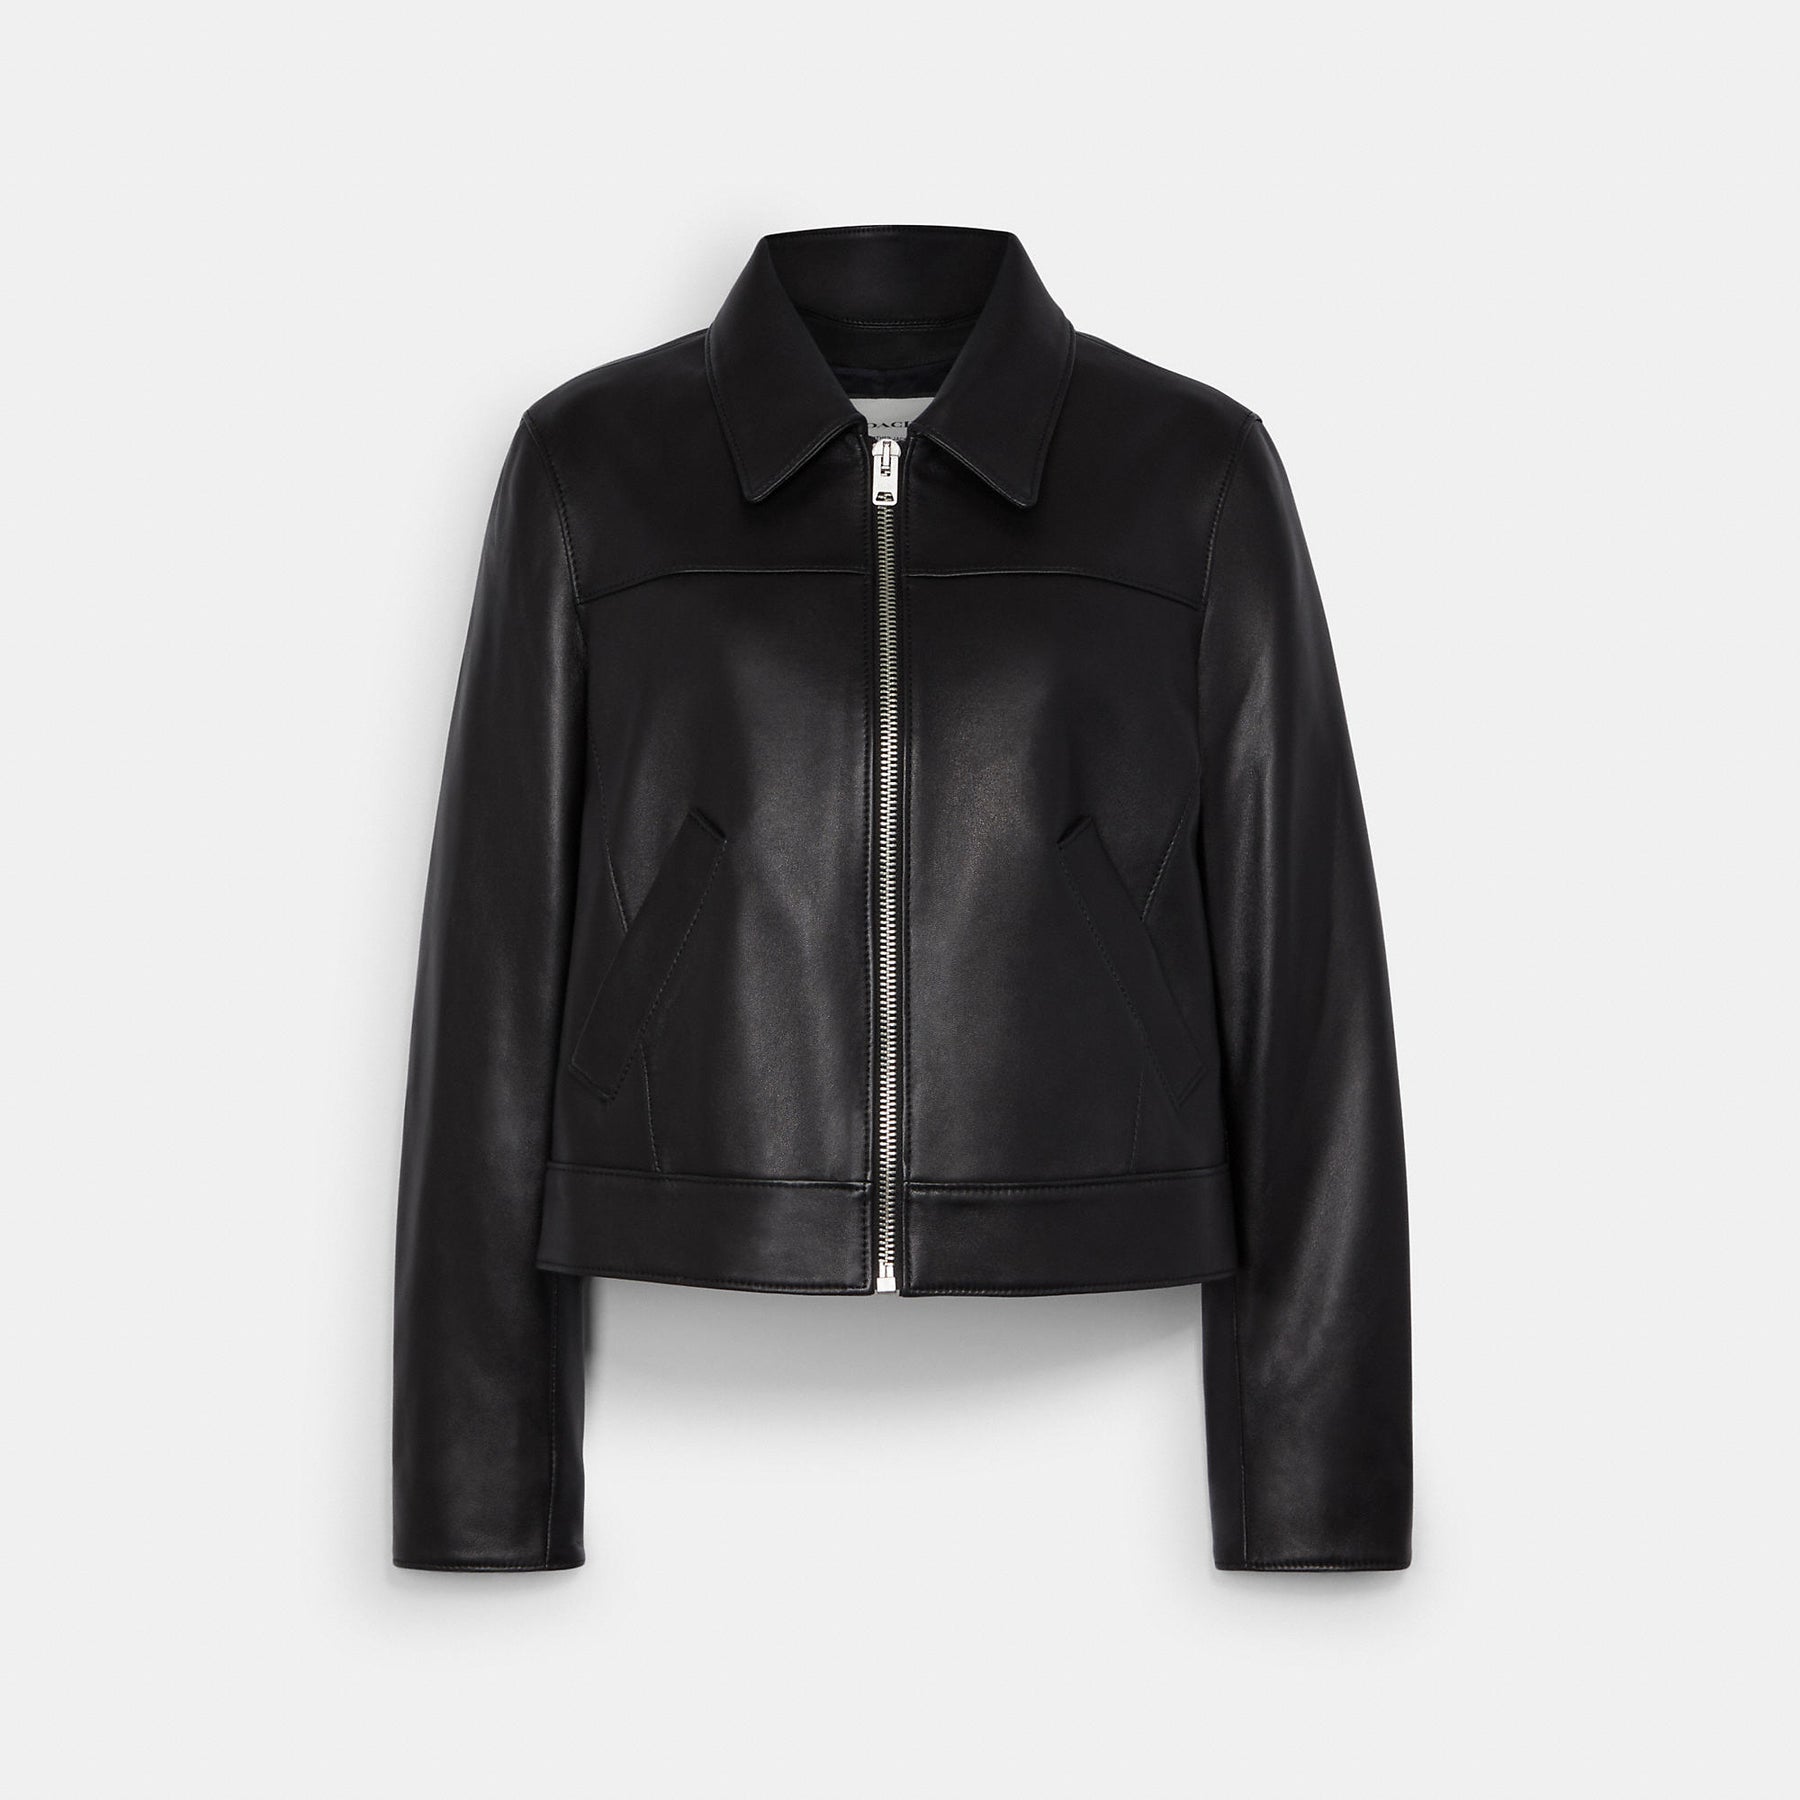 Coach Outlet Leather Jacket | Shop Premium Outlets